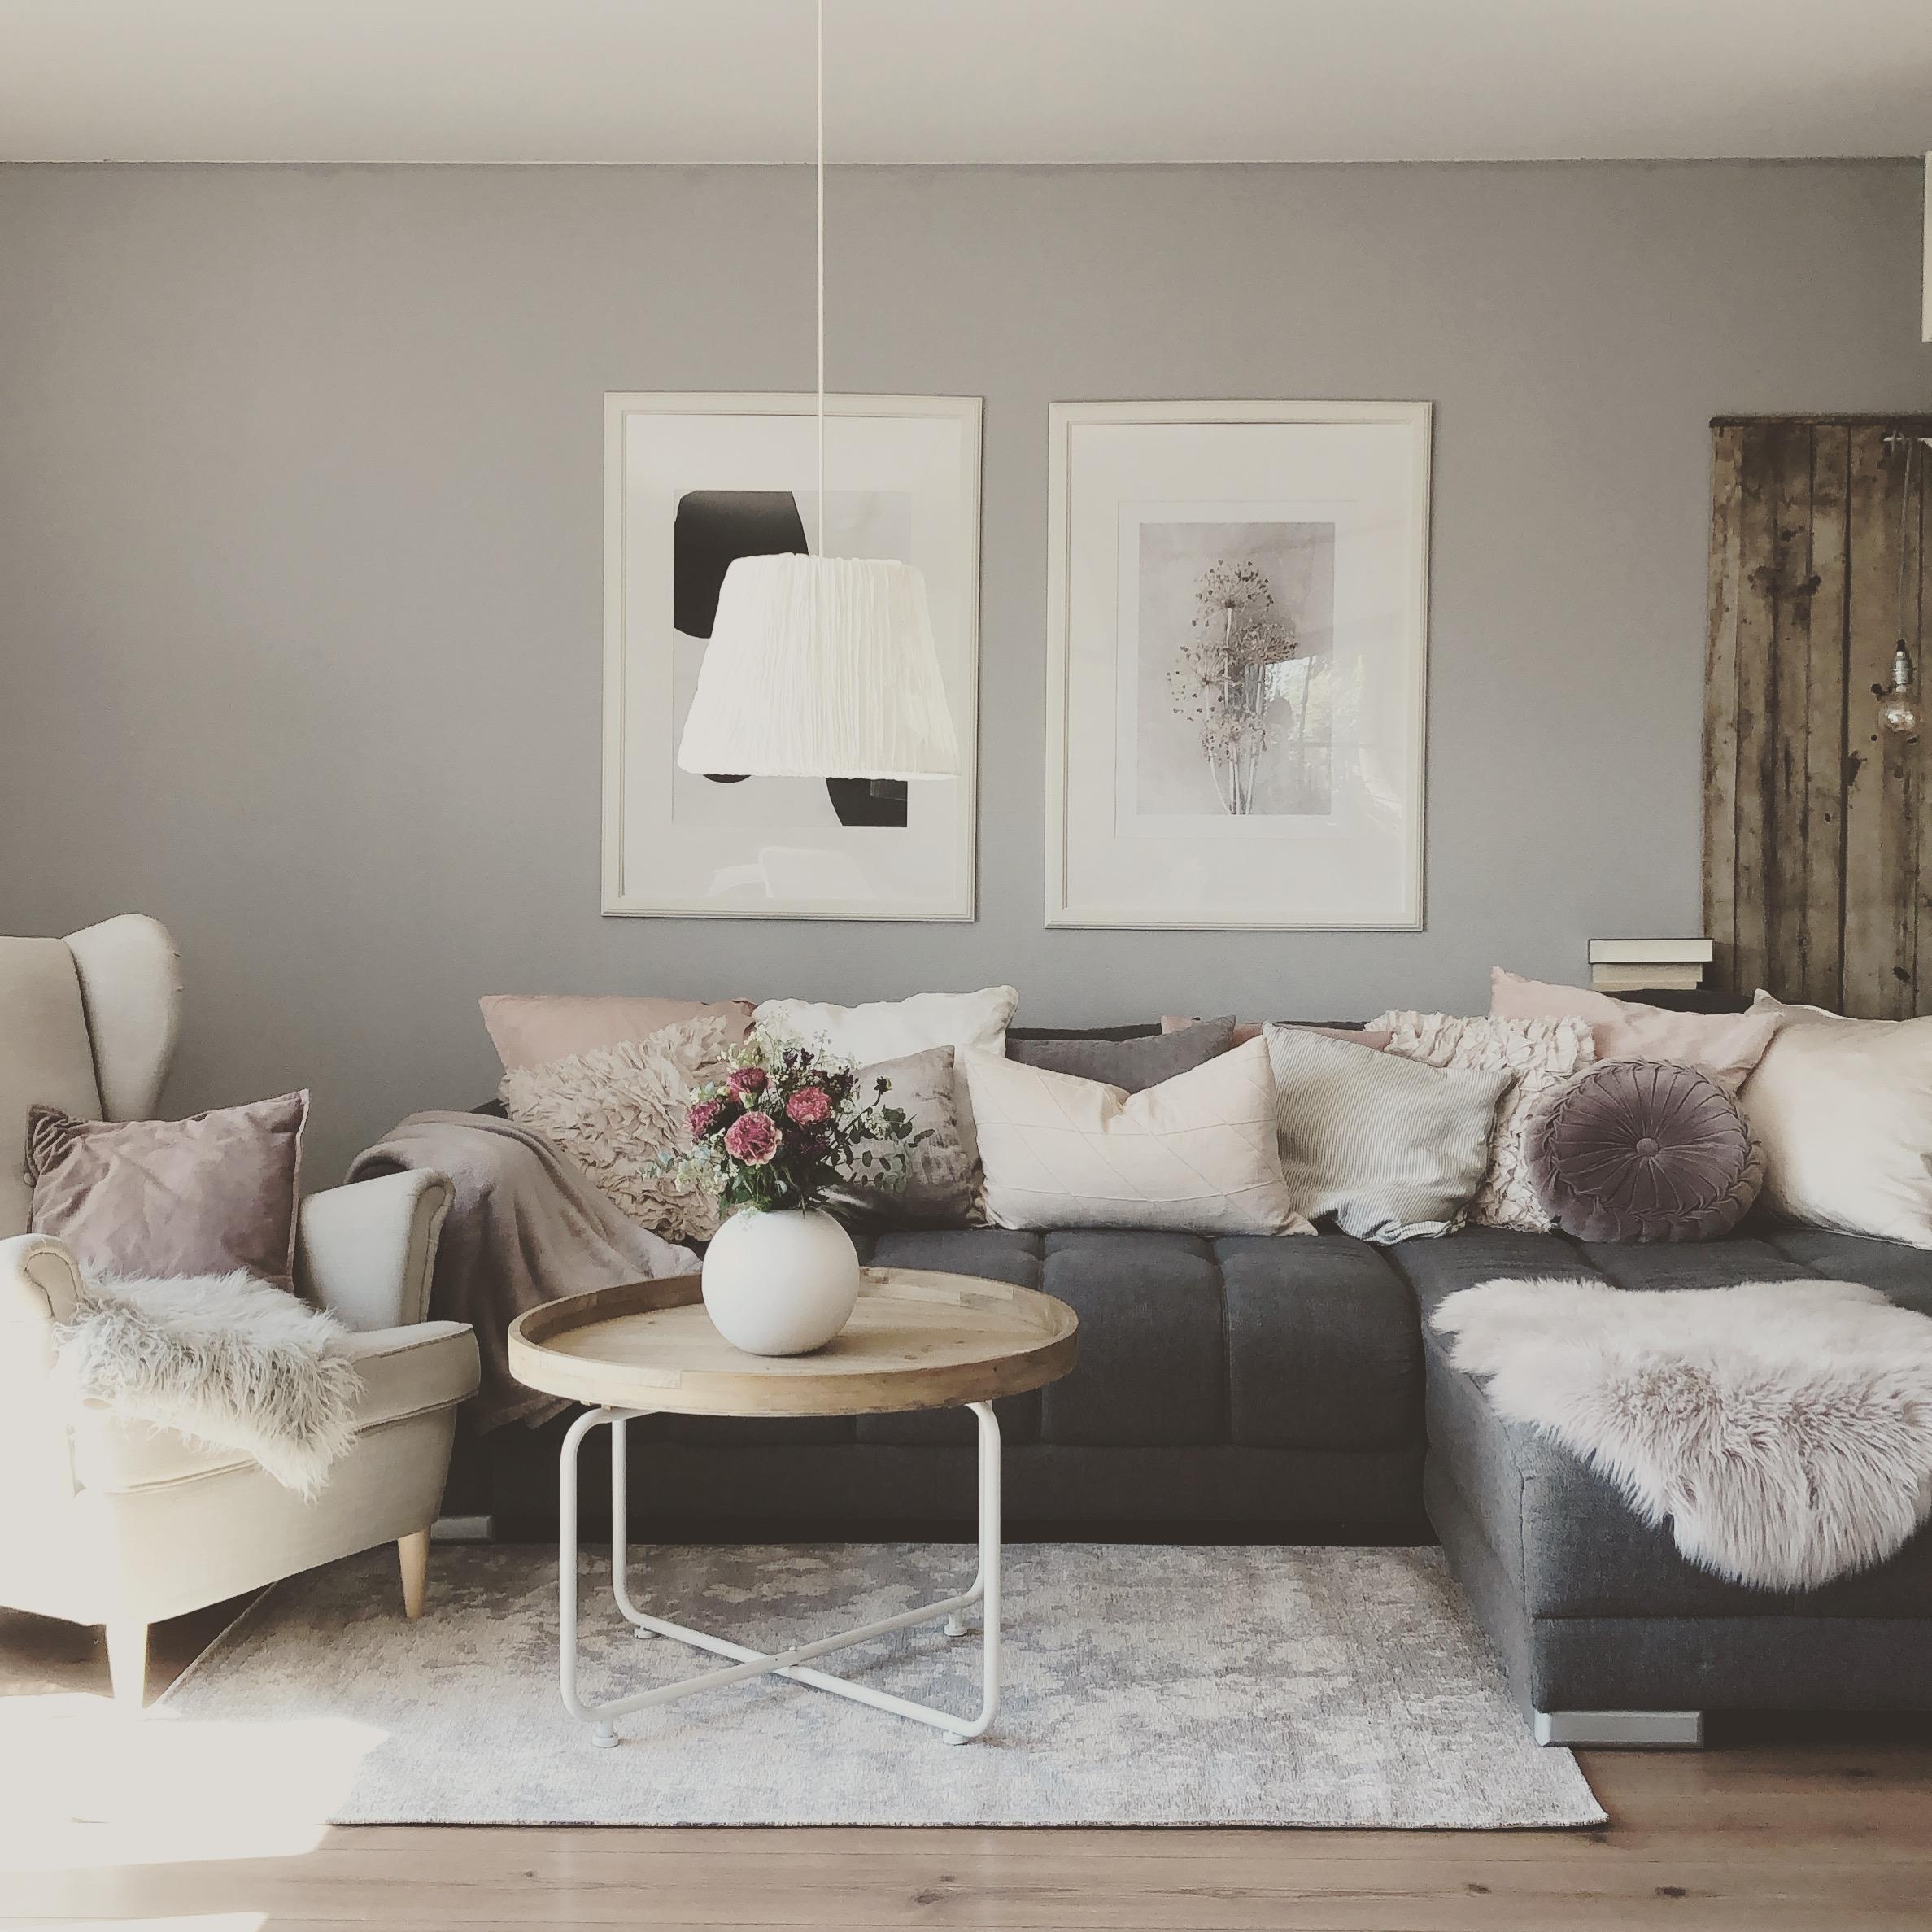 Ich änder gern Bilder,Kissen oder Lampen..damit erzeugt man kleine Veränderungen.
#wohnraum#couch#skandiliving#changeit